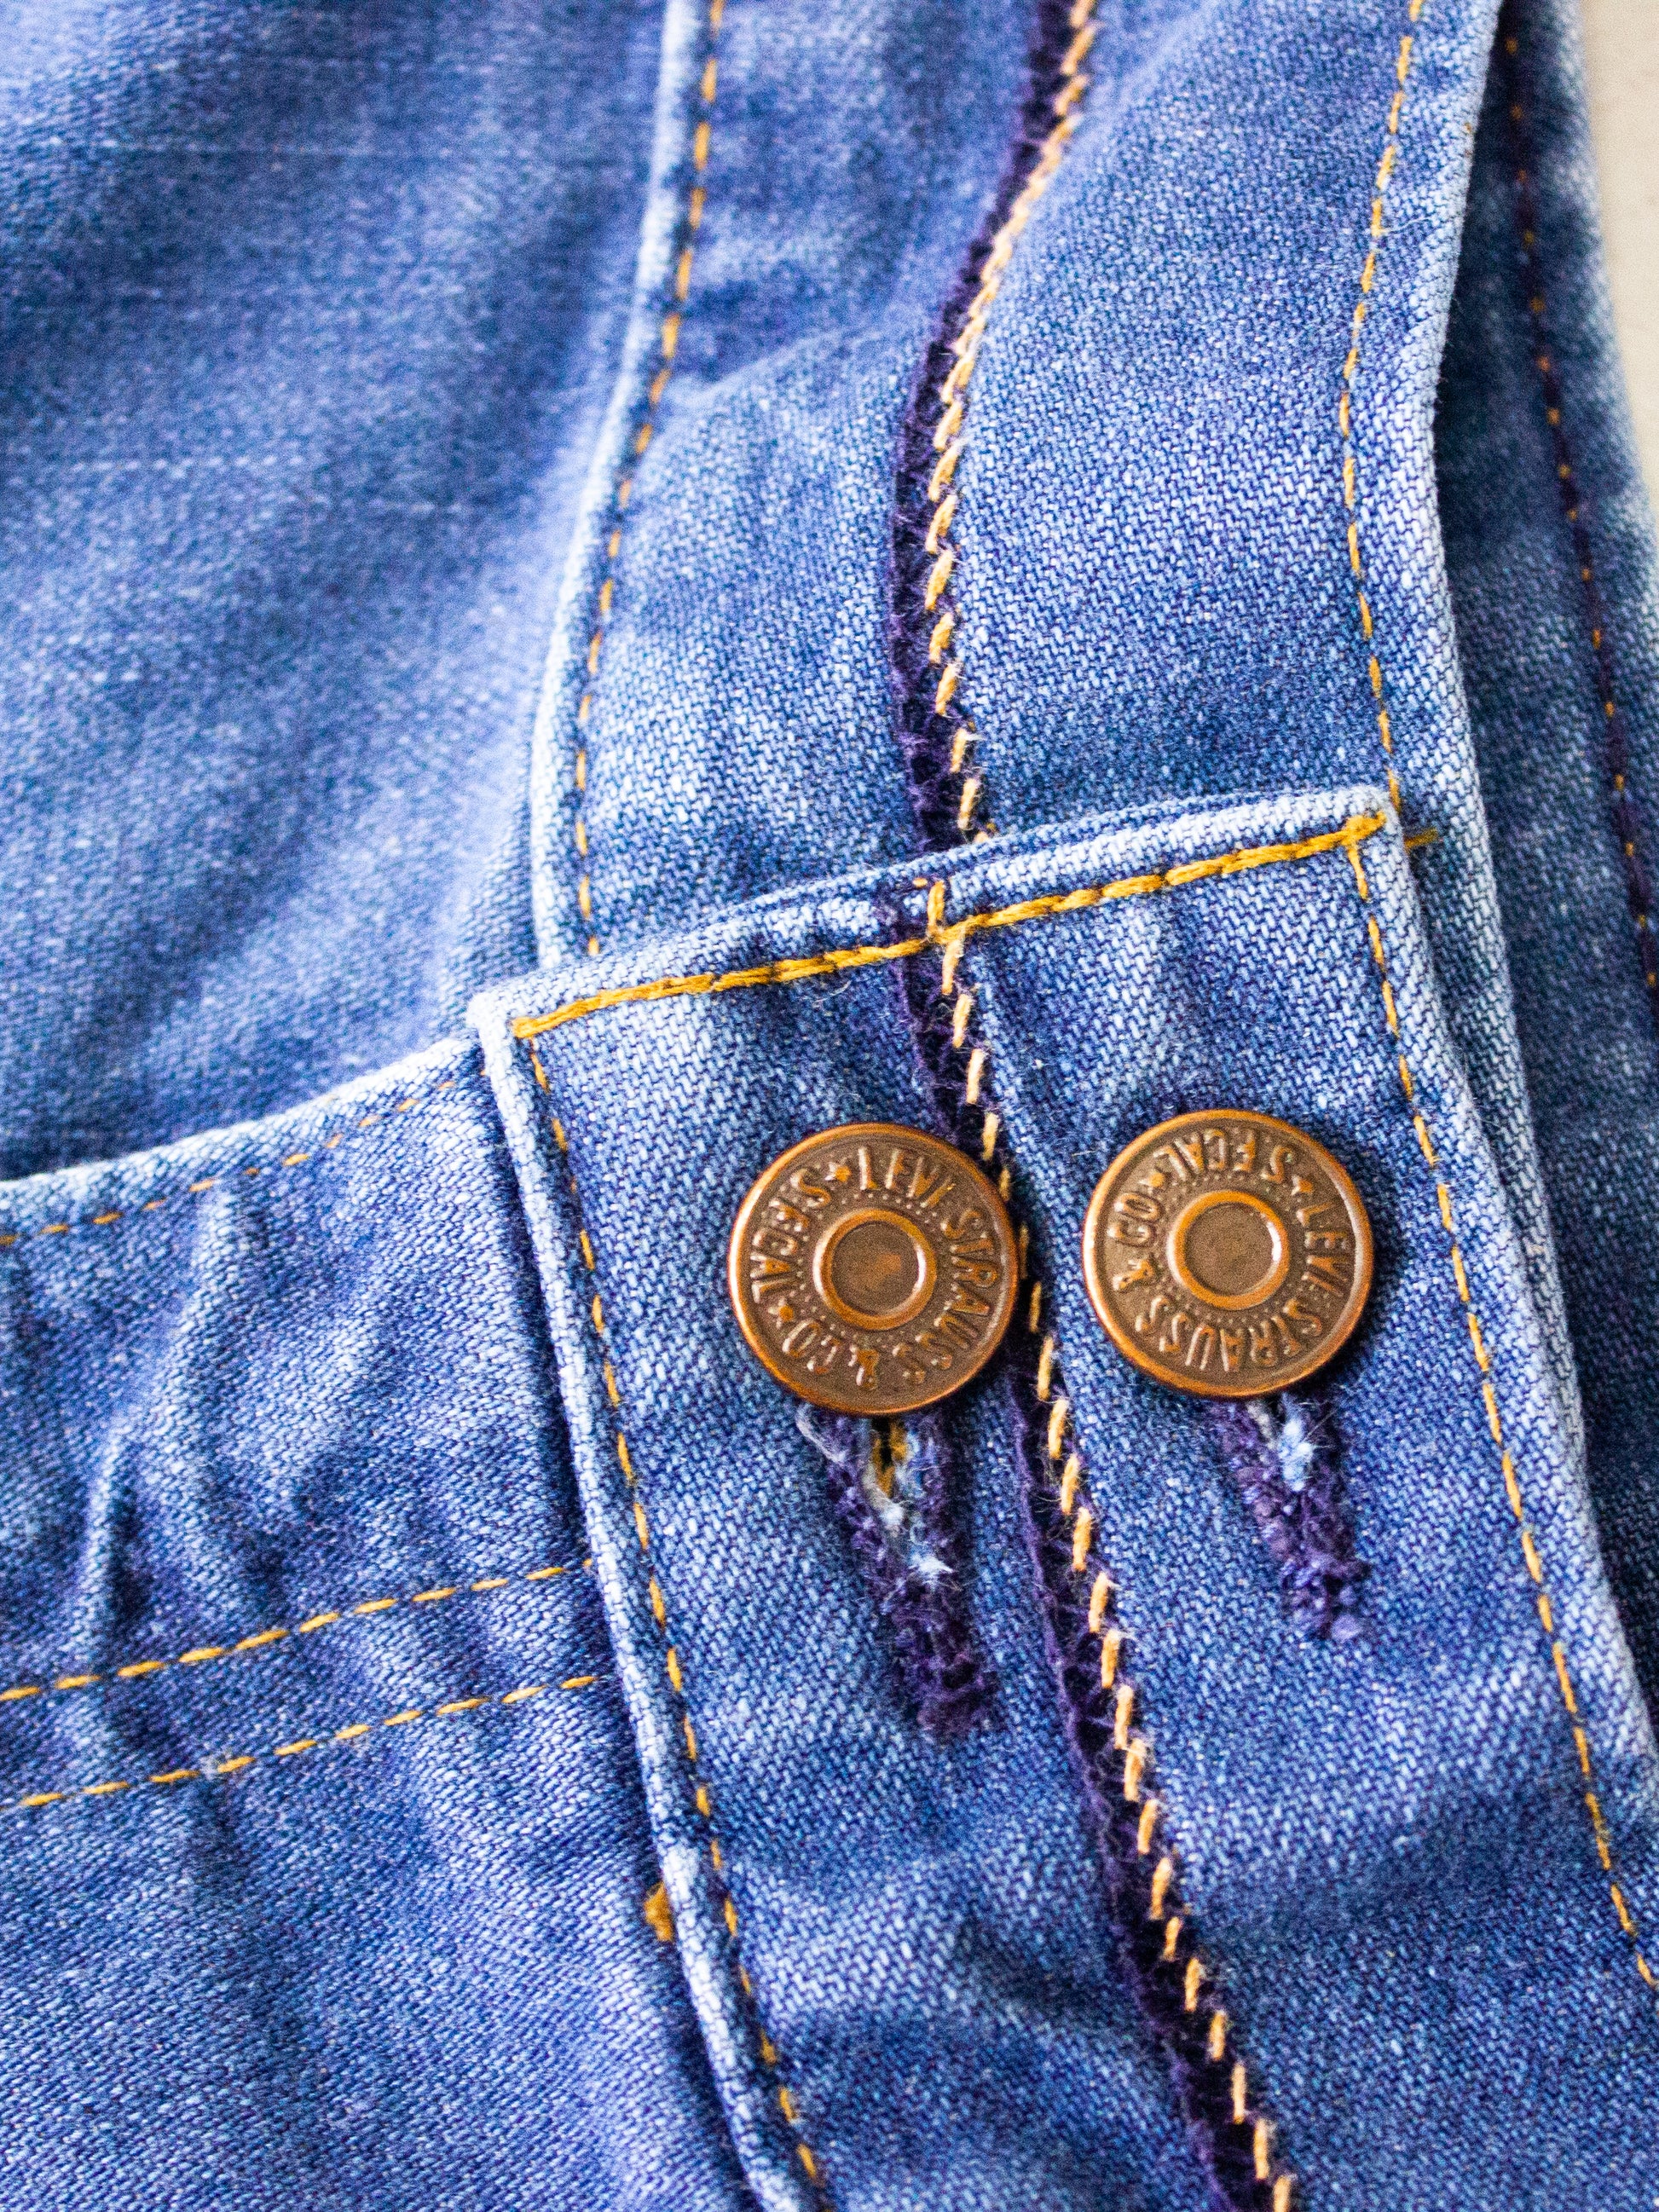 Vintage 70s Levi's Orange Tab Flare Jeans - Bell Bottom Denim - Medium –  The Only Vintage